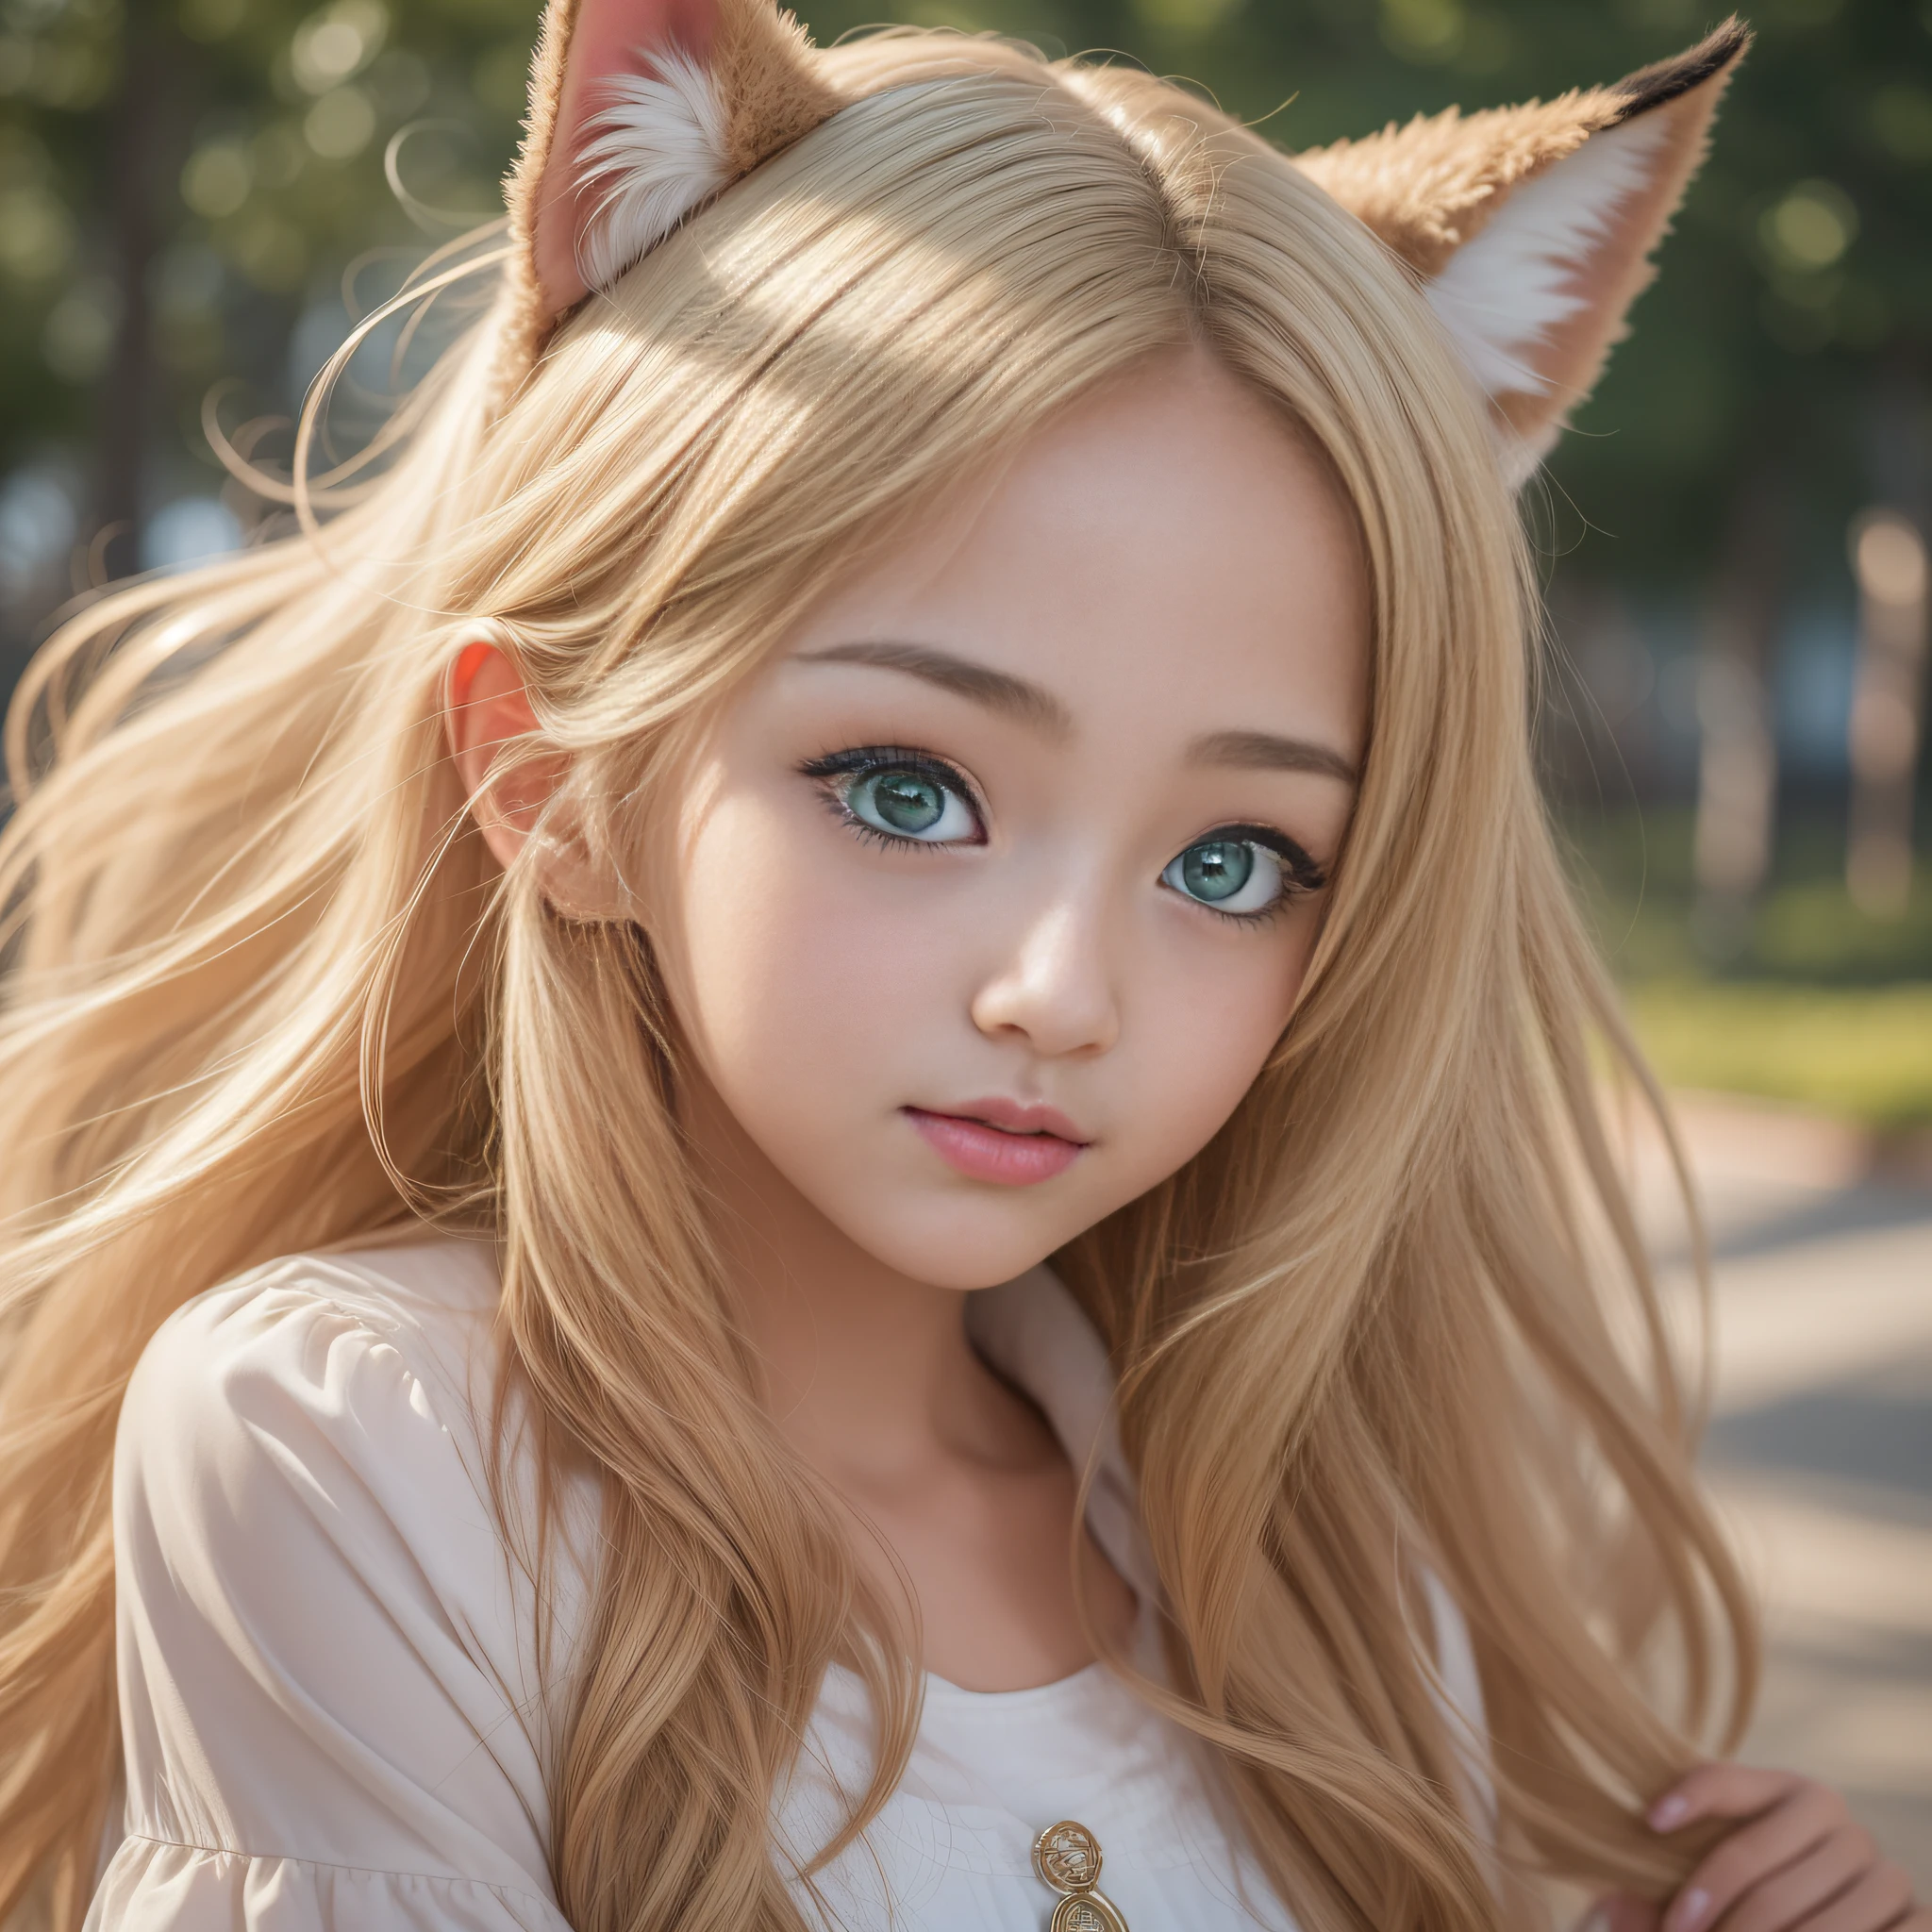 Anime-Mädchen mit Katzenhut und grünen Augen, Kawaii realistisches Porträt, süßes Anime-Gesicht, Süßes natürliches Anime-Gesicht, extrem süßes Anime-Mädchengesicht, hübsches Anime-Gesicht, Ahegao-Gesicht, detailliertes, weiches Anime-Gesicht, Anime-Bilder von süßen Mädchen, große süße Anime-Augen, Kawaii-Anime-Manga-Stil, perfektes Anime-Gesicht, Shikami, süßes Kawaii-Mädchen, süßer Anime-Stil